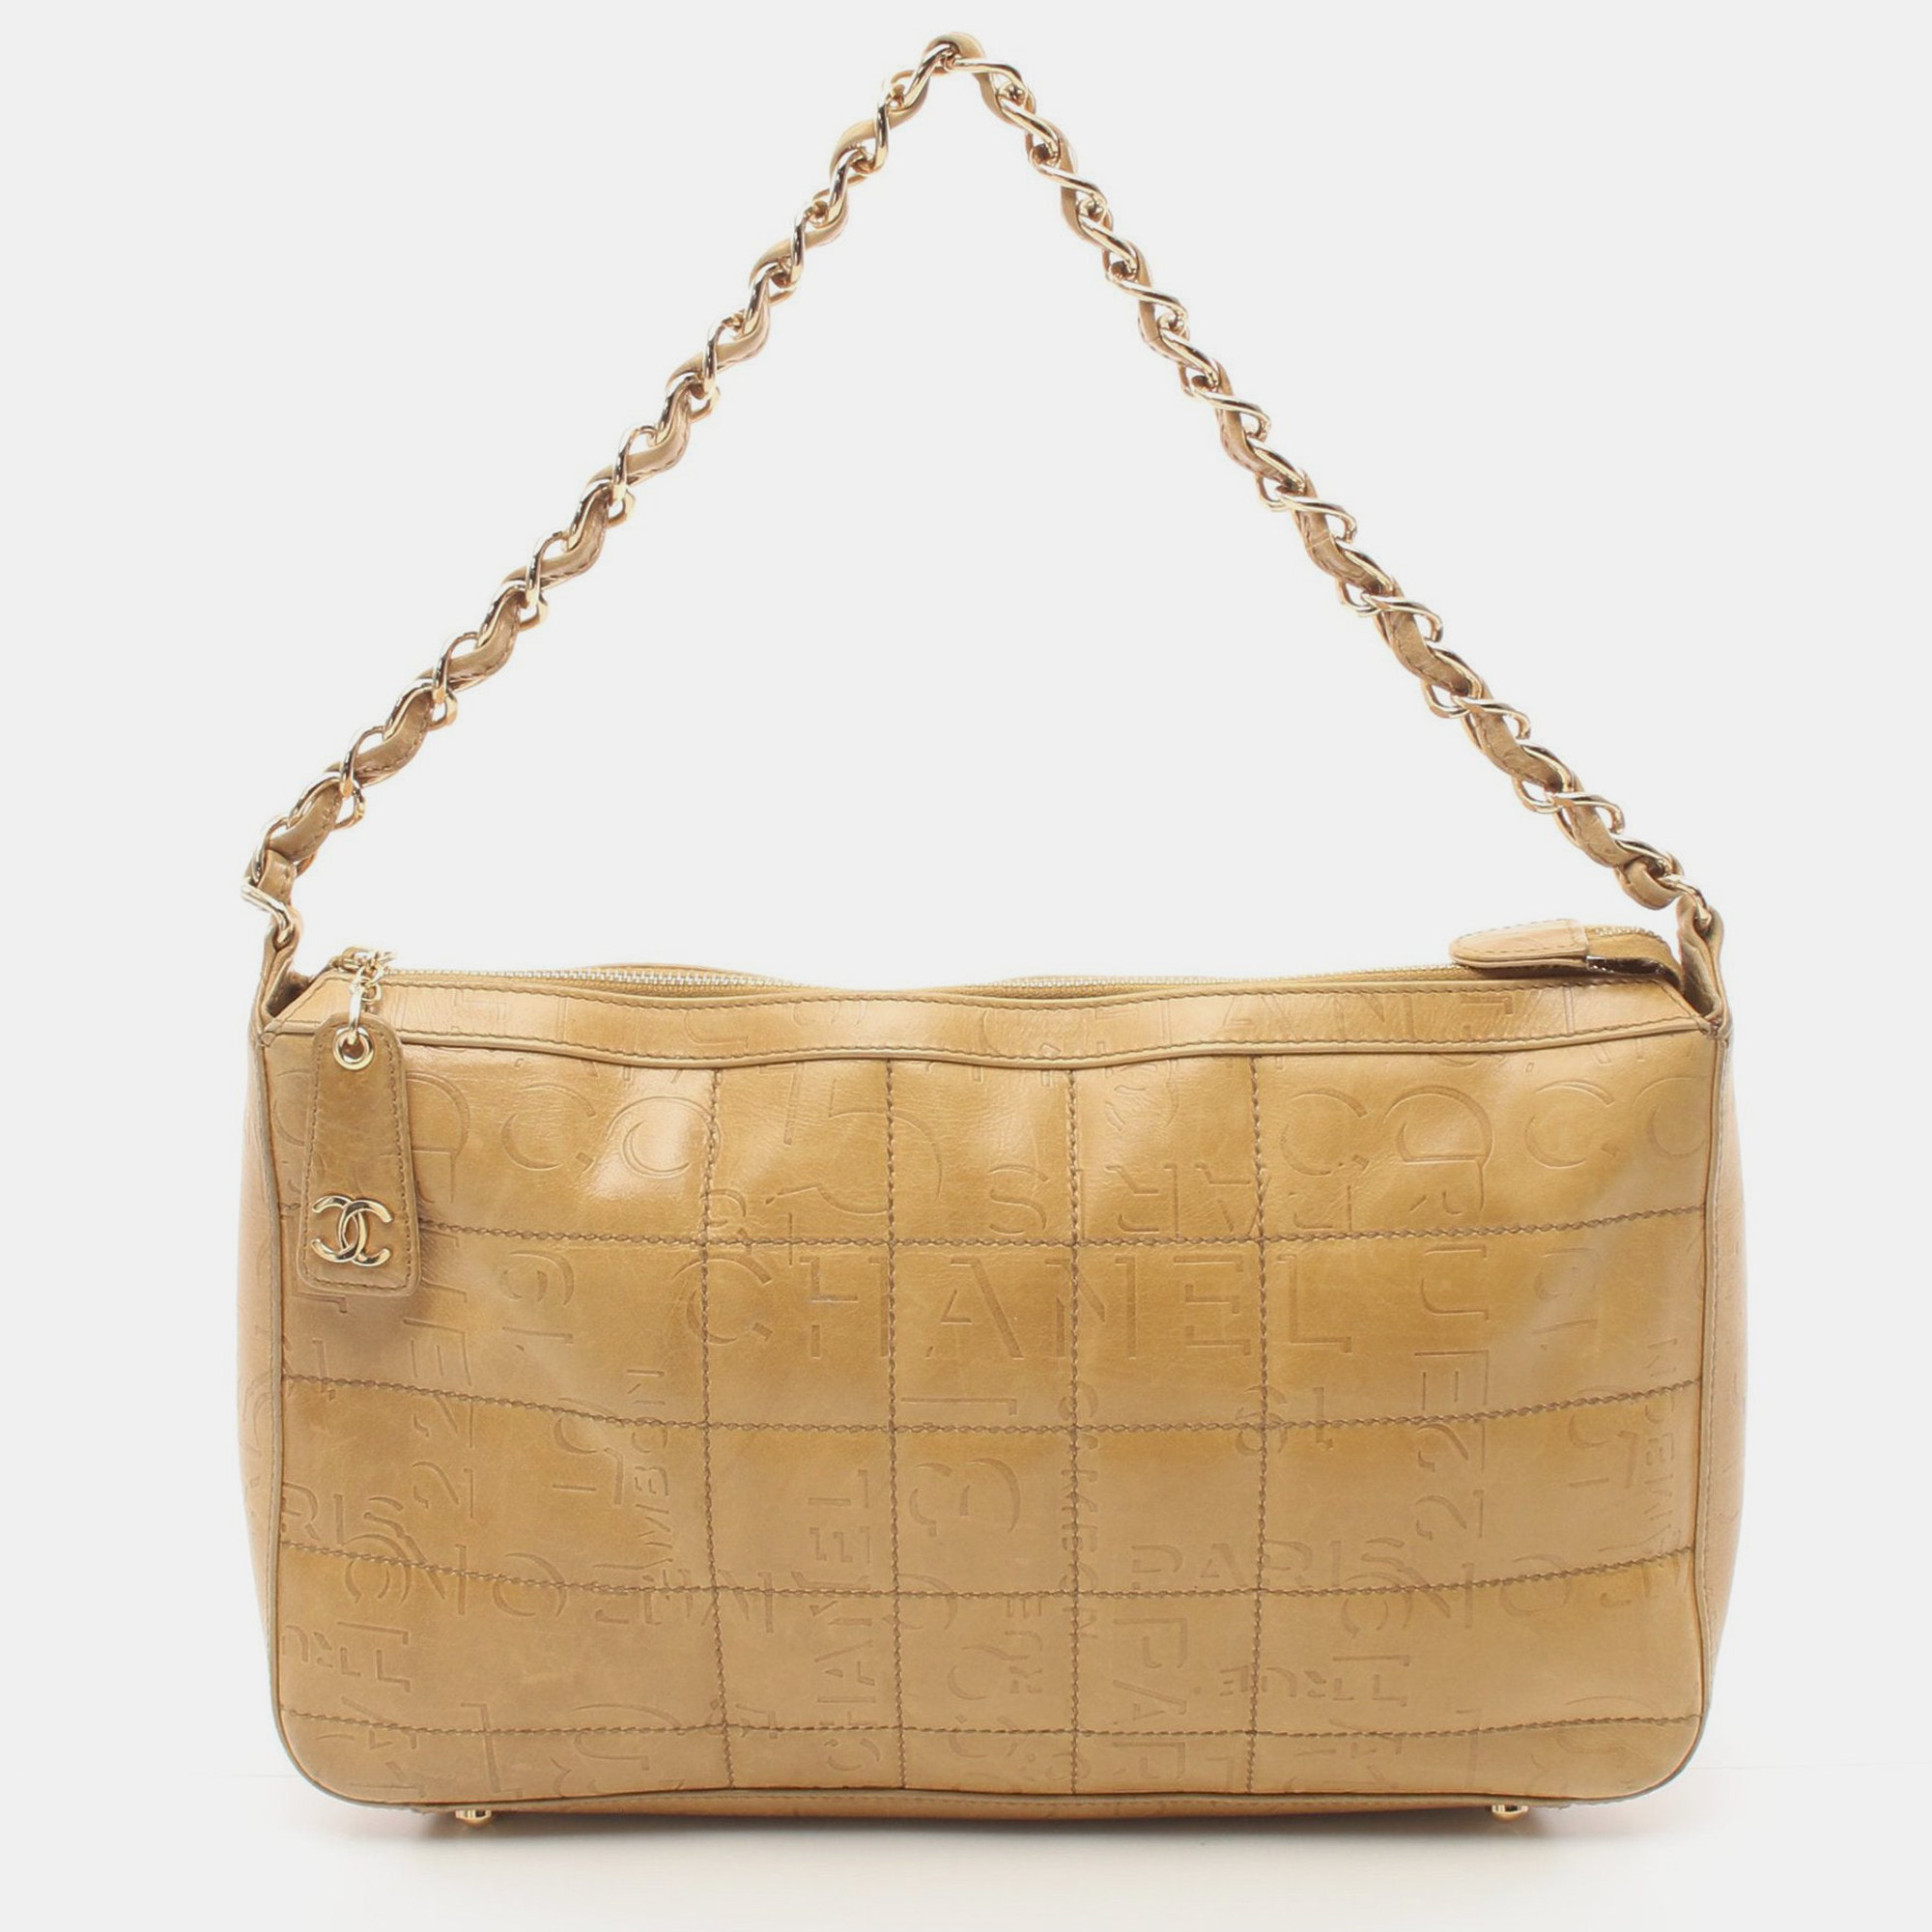 Chanel chain shoulder bag leather light brown gold hardware logo